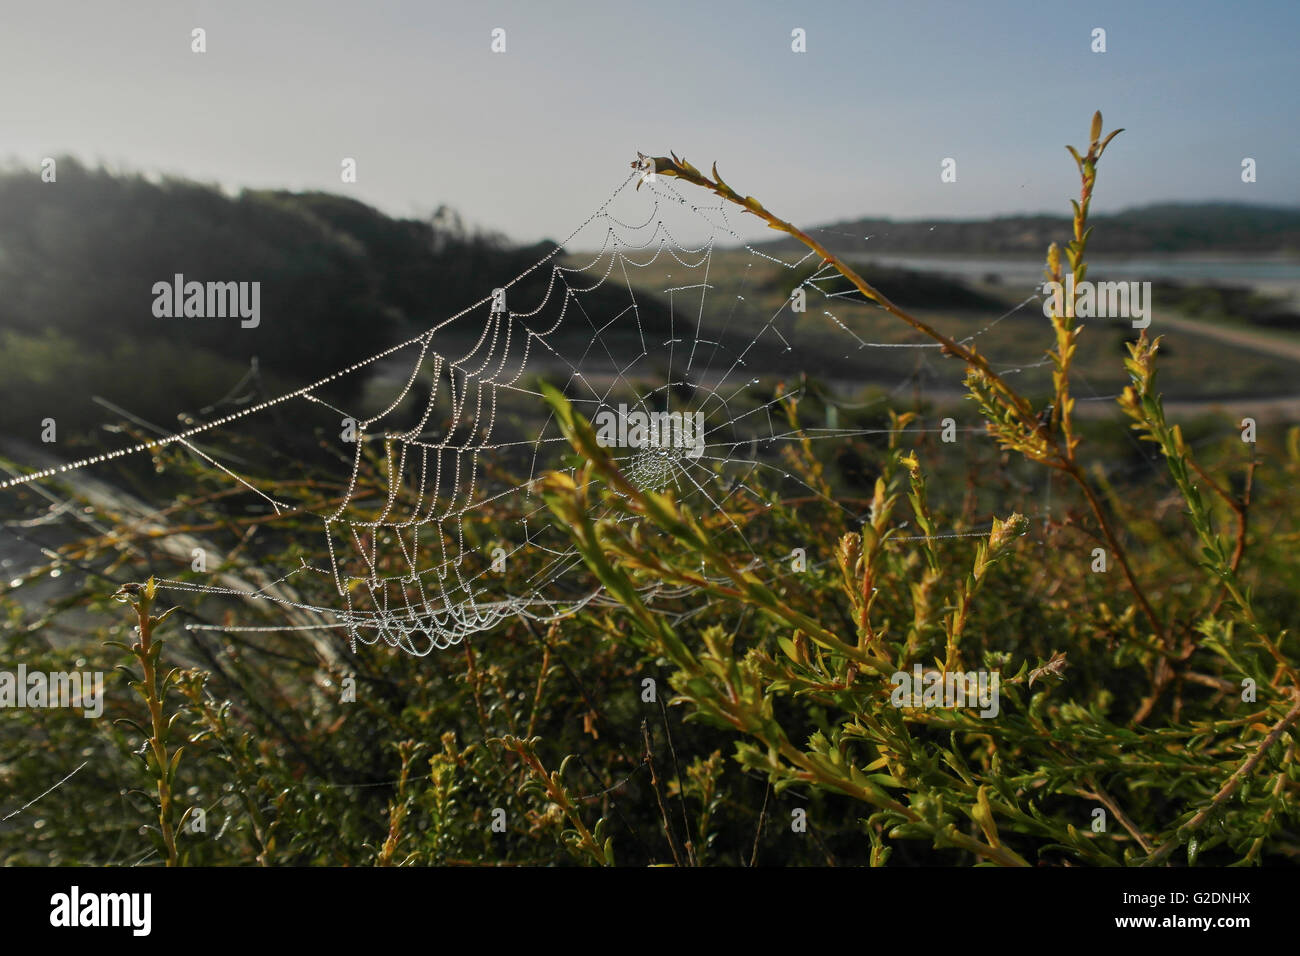 Spider web en Australie du Sud - Australie Banque D'Images